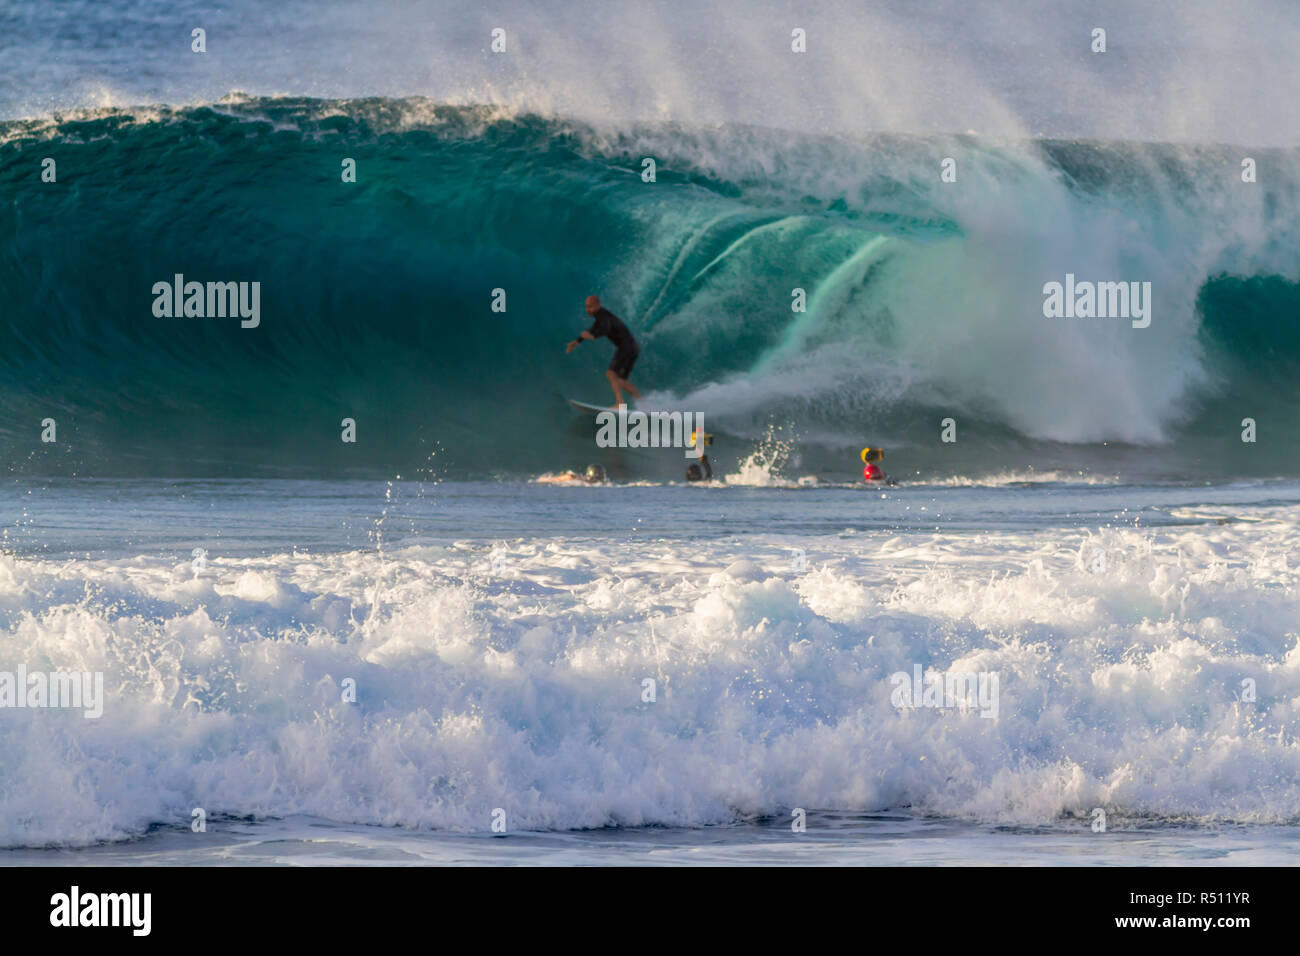 1/08/18, Hale'iwa Hawaii : Kelly Slater capturés par les photographes de surf surf une vague Banque D'Images